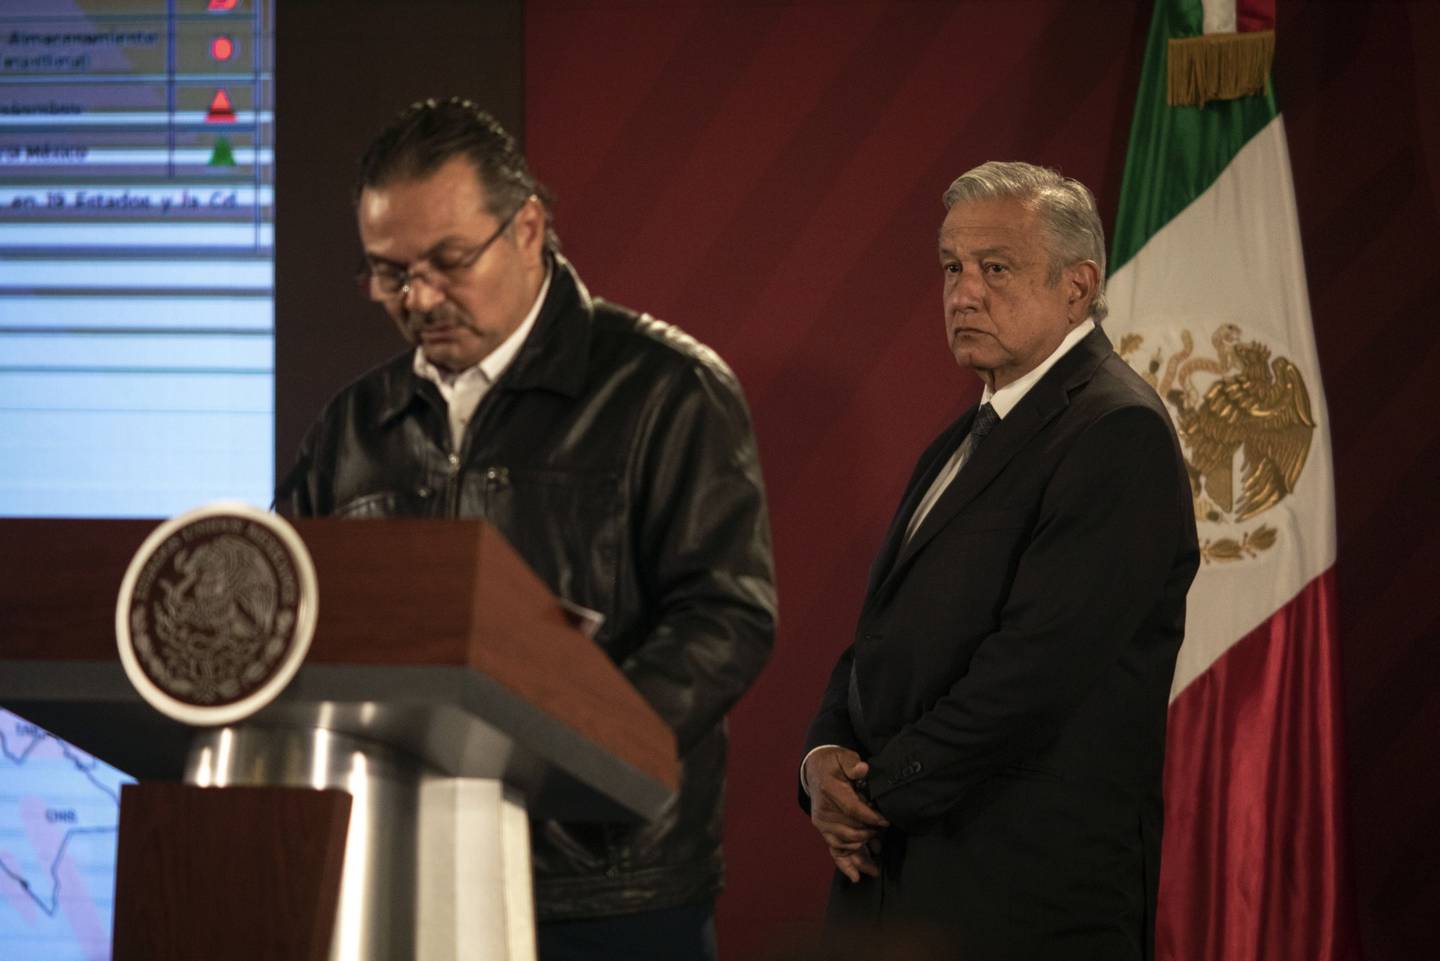 El presidente de México, Andrés Manuel Lopez Obrador, escucha mientras Octavio Romero Oropeza, CEO de Petróleos Mexicanos (Pemex), habla durante una conferencia de prensa en el Palacio Nacional en la Ciudad de México.